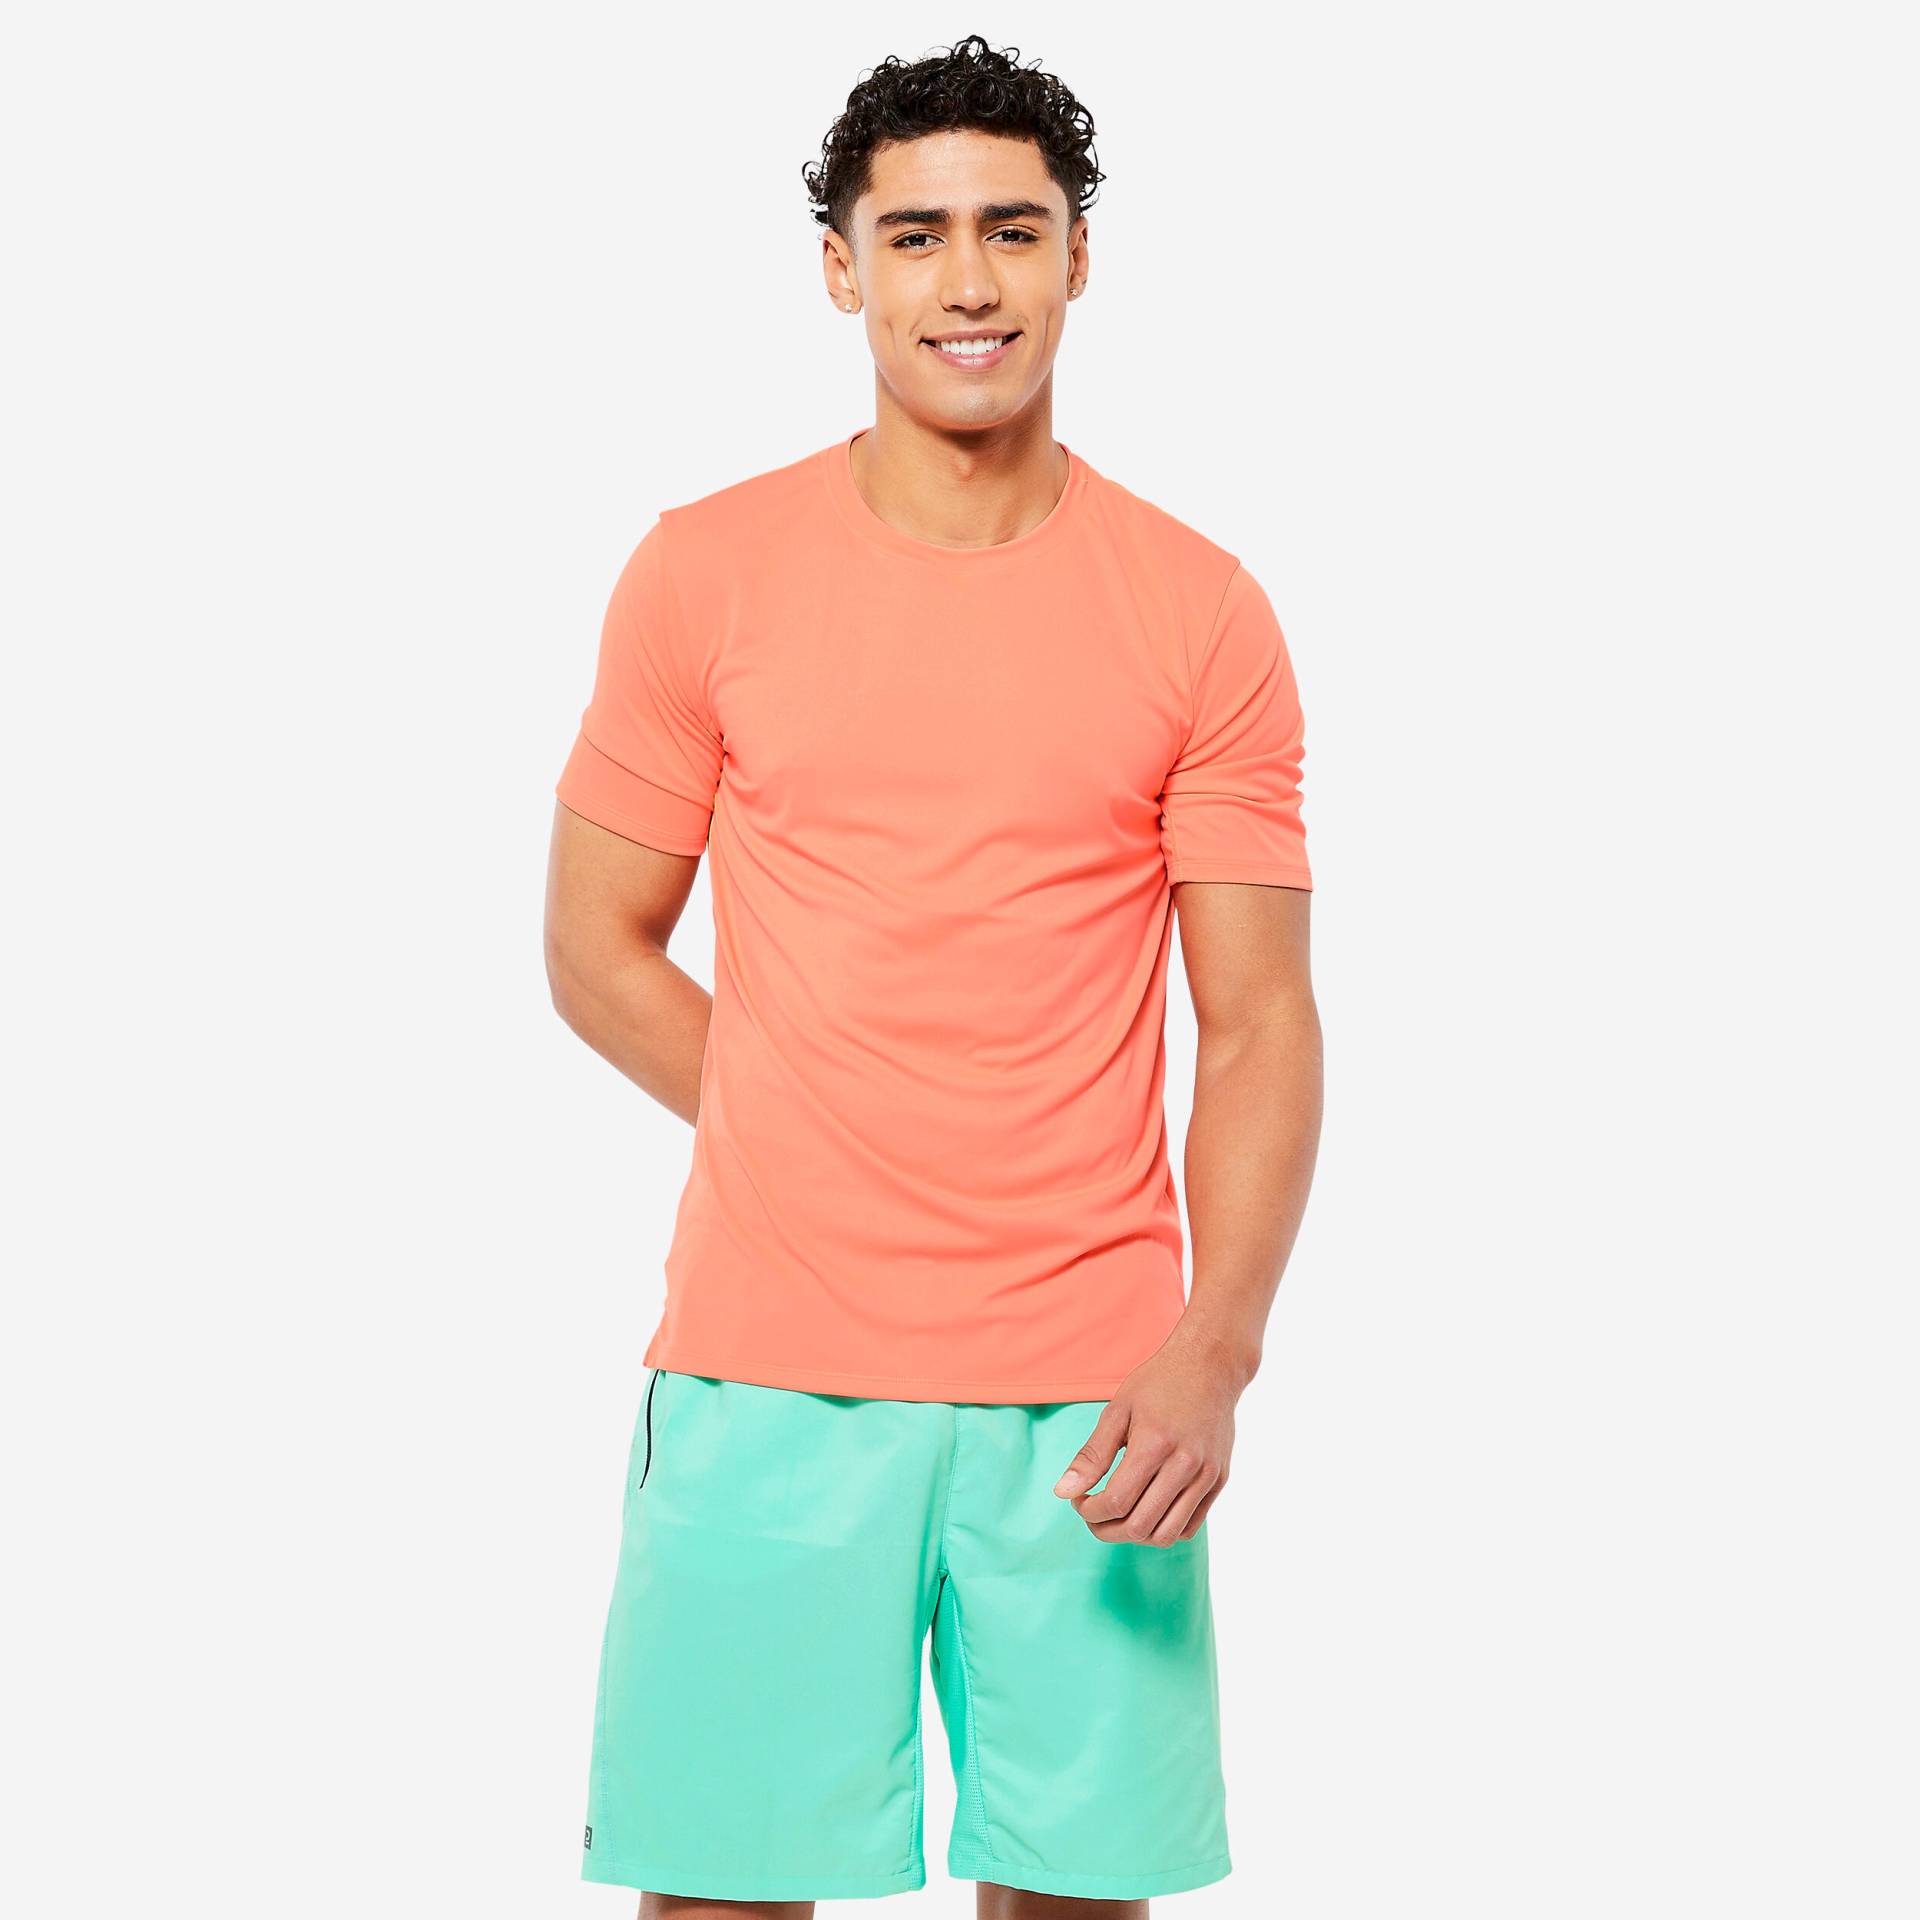 T-Shirt Herren - Essential orange von Domyos